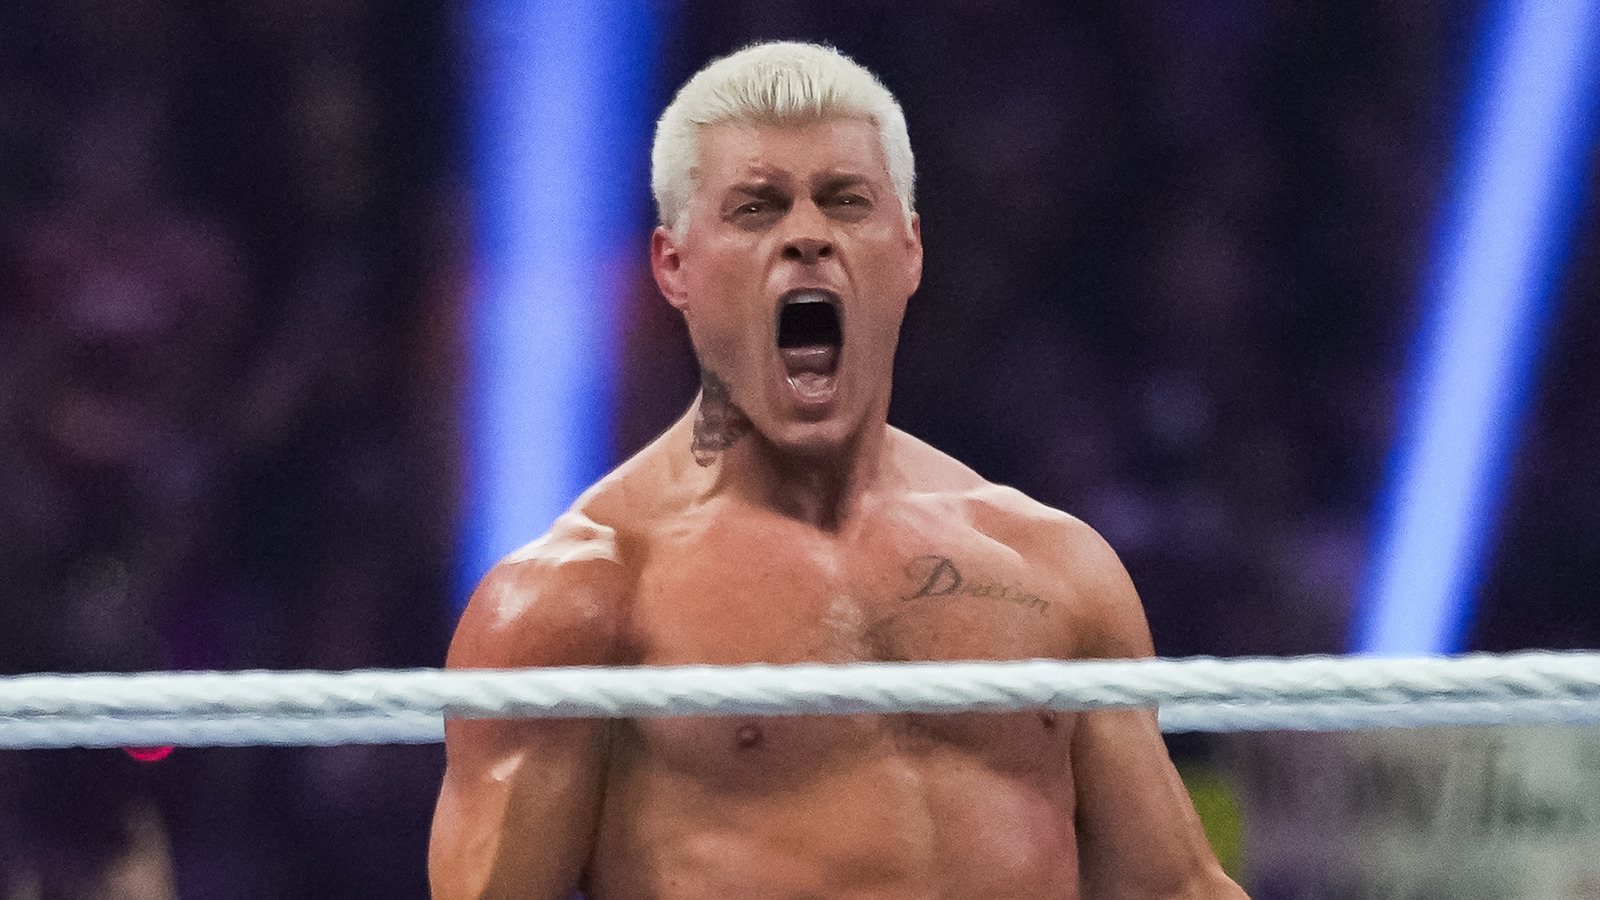 Cody Rhodes comparte un mensaje críptico sobre la decisión de WWE WrestleMania antes del evento de prensa